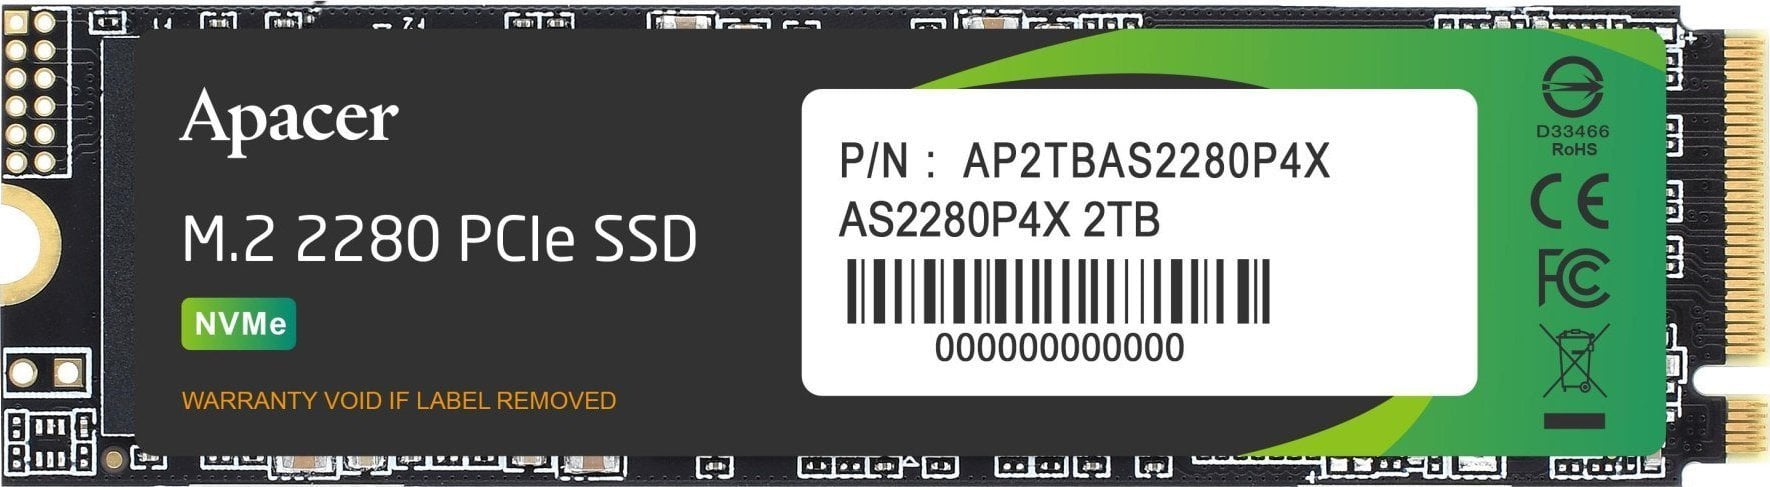 Apacer SSD Apacer AS2280P4X 2TB M.2 PCIe NVMe Gen3 x4 2280 SSD (2100/1700MB/s)